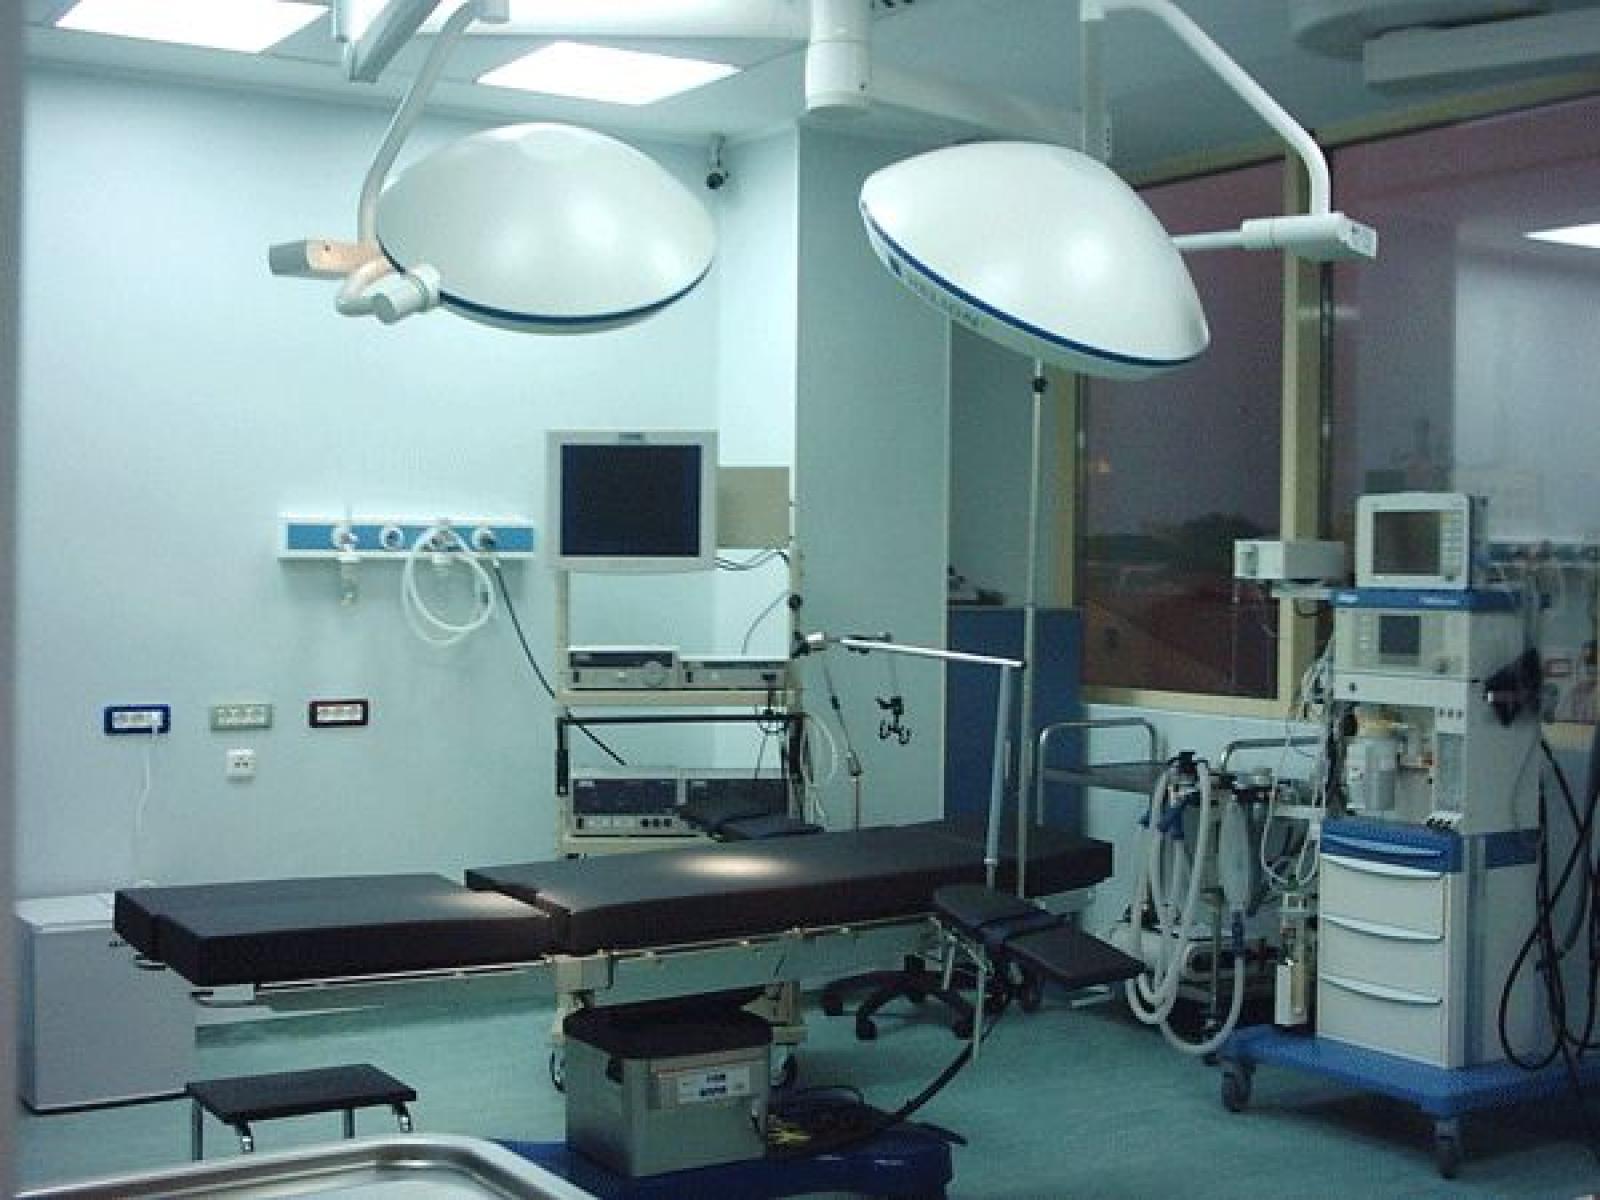 MEDSTAR General Hospital - sala-de-operatie2.jpg